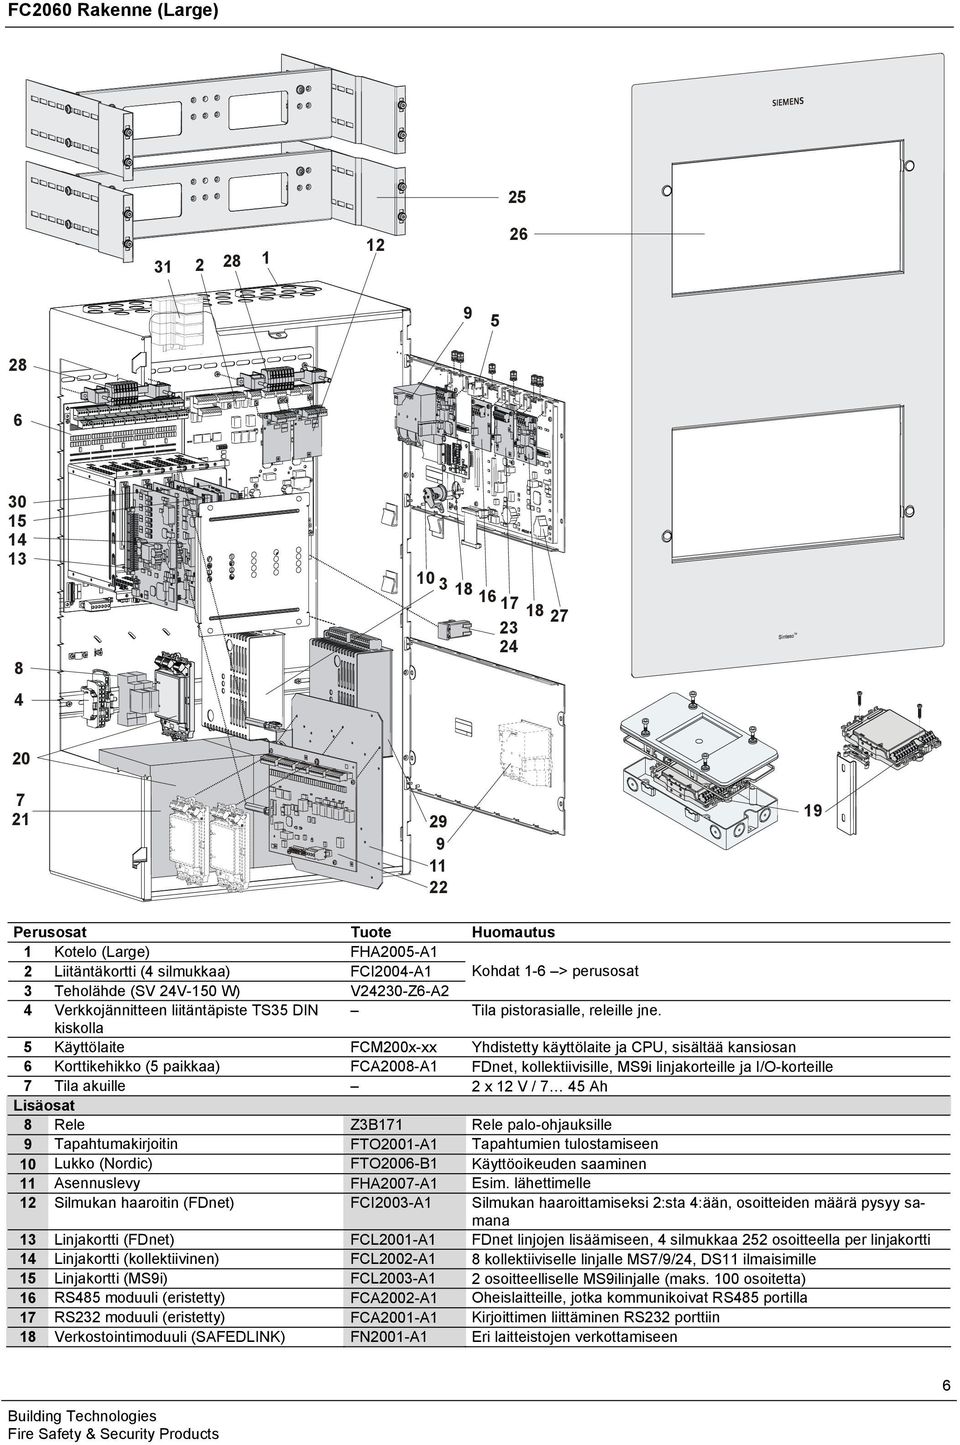 kiskolla 5 Käyttölaite FCM200x-xx Yhdistetty käyttölaite ja CPU, sisältää kansiosan 6 Korttikehikko (5 paikkaa) FCA2008-A1 FDnet, kollektiivisille, MS9i linjakorteille ja I/O-korteille 7 Tila akuille